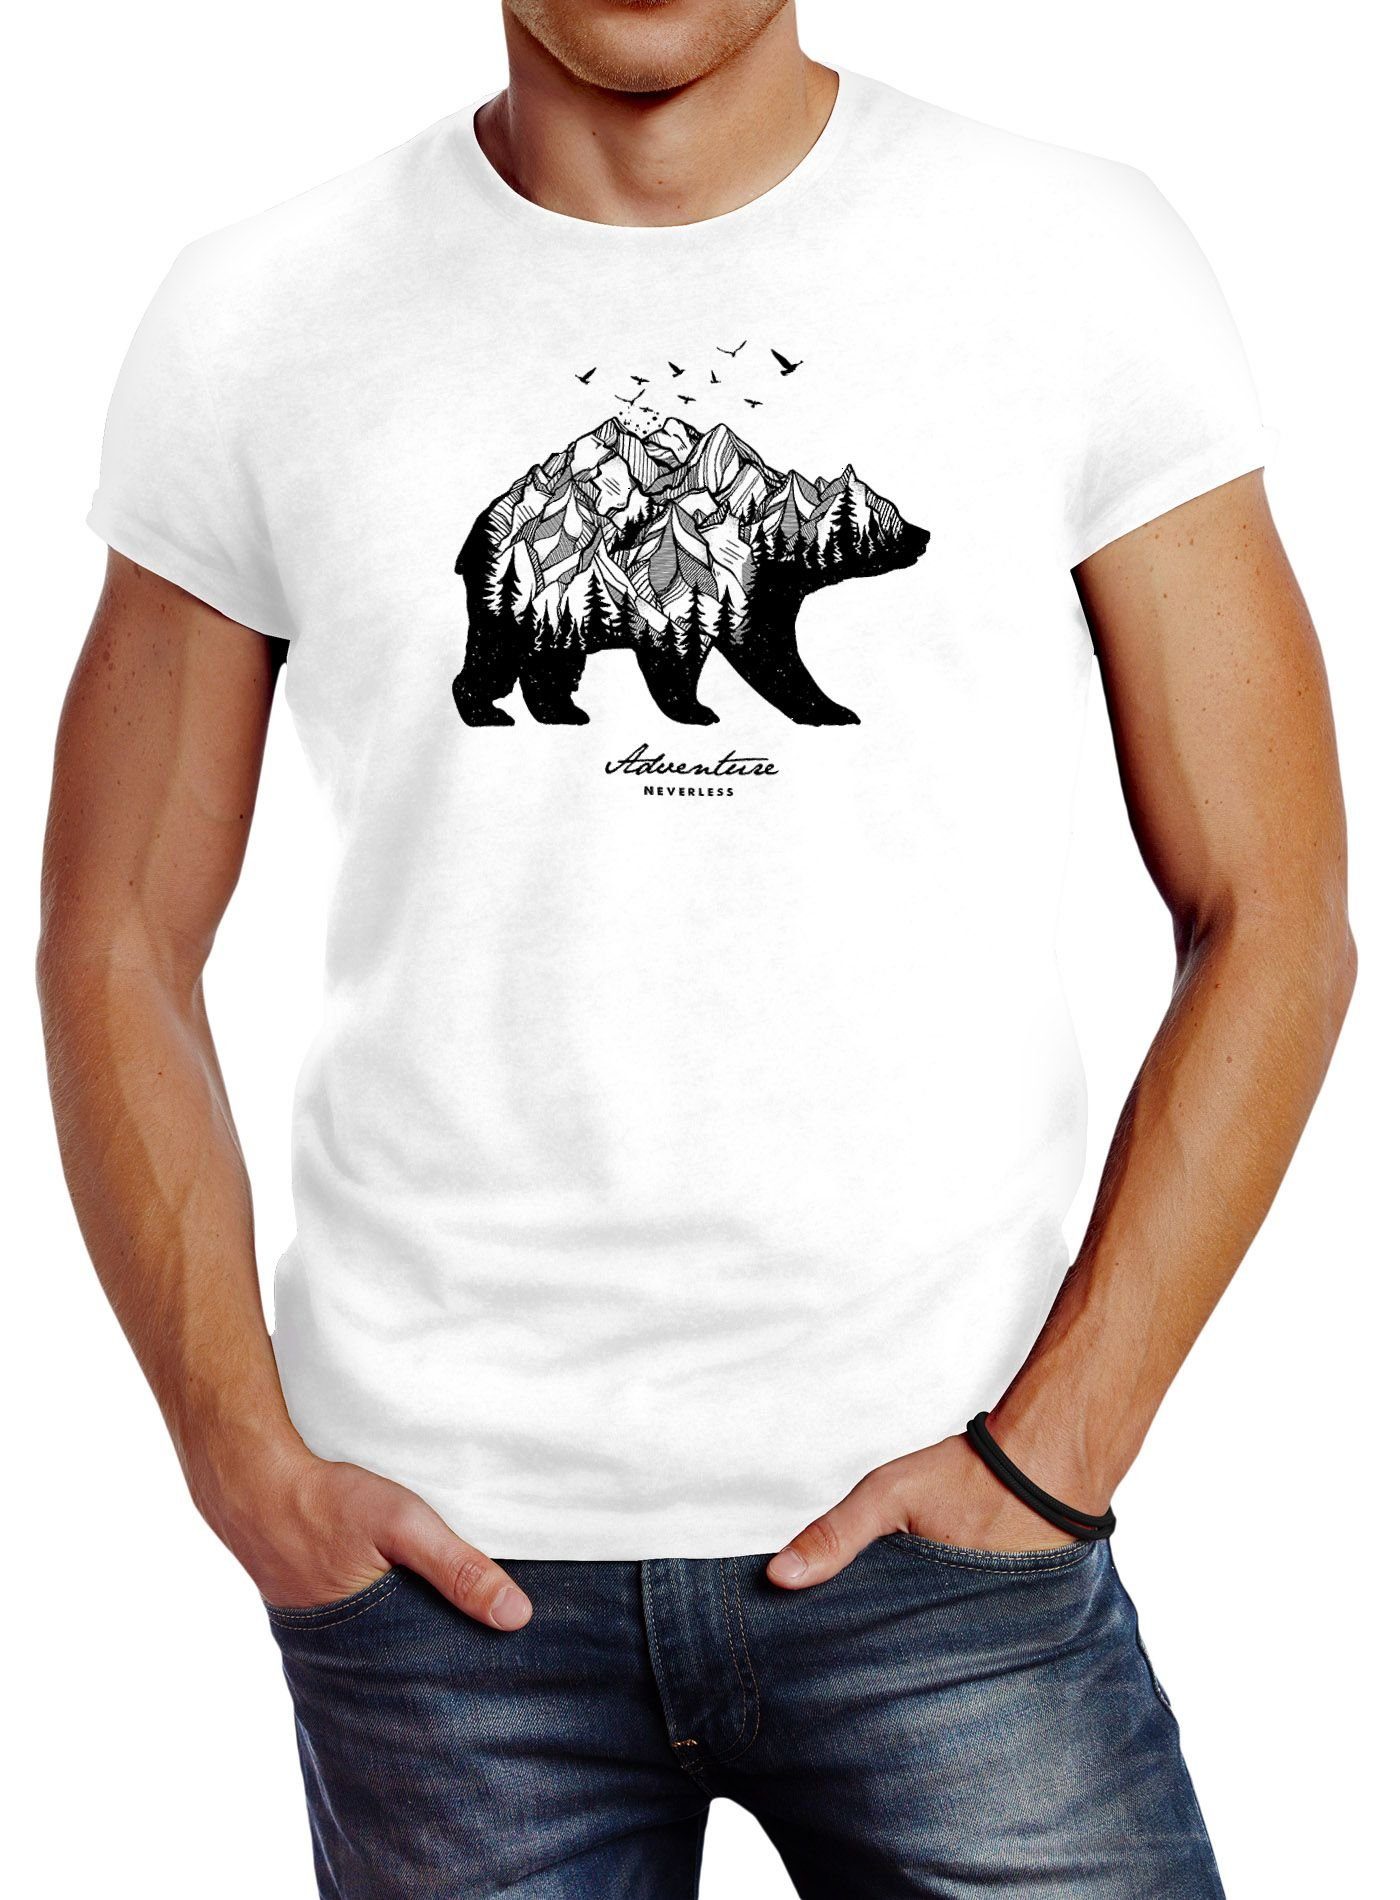 Adventure Wald Abenteuer Mountains Neverless weiß Berge Herren Bär Fit Bear mit Neverless® T-Shirt Print-Shirt Slim Print